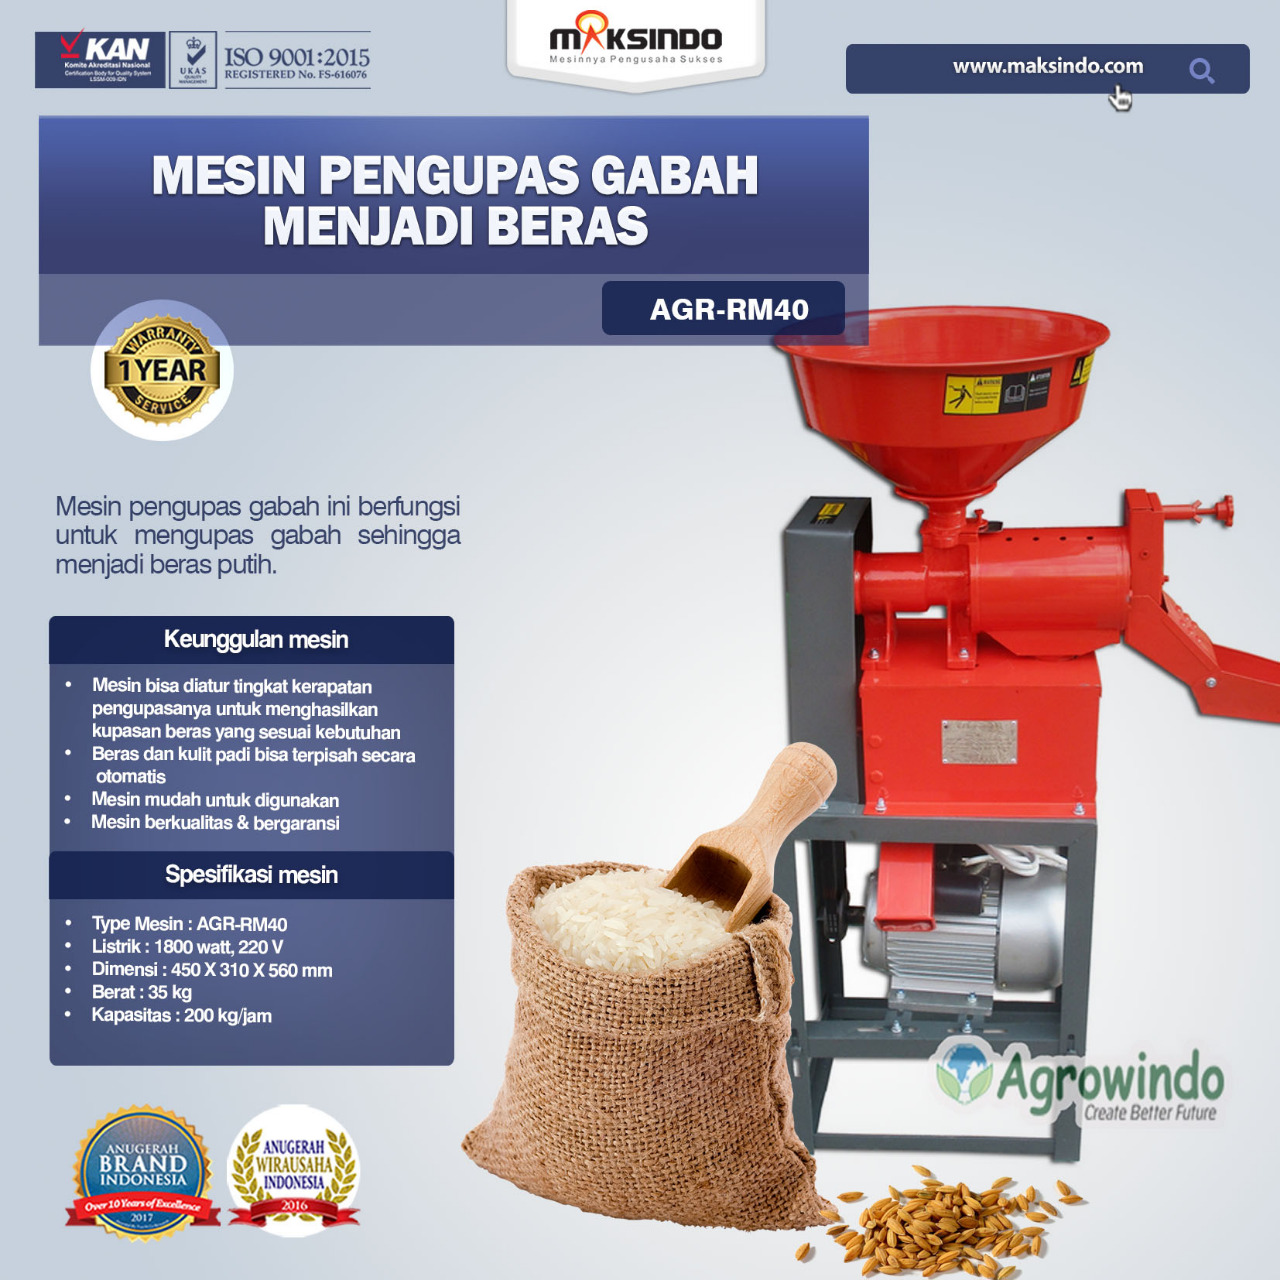 Jual Mesin Rice Huller Mini Pengupas Gabah – Beras AGR-RM40 di Tangerang